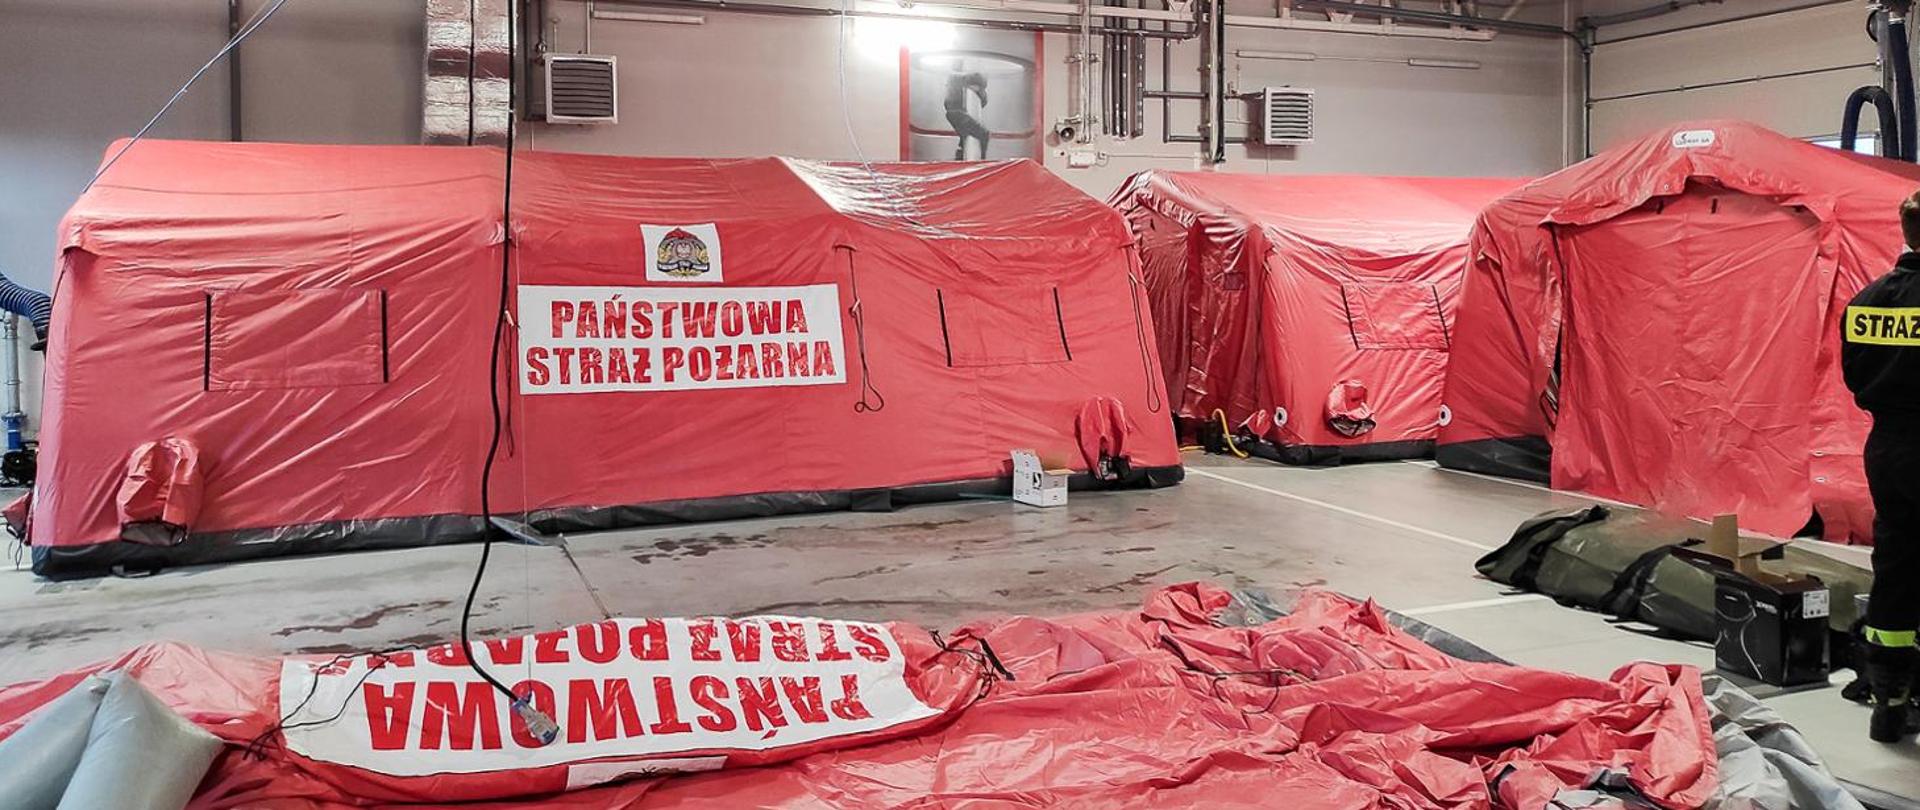 Zdjęcie przedstawia 3 namioty pneumatyczne koloru czerwonego. Na namiotach widoczny jest napis Państwowa Straż Pożarna